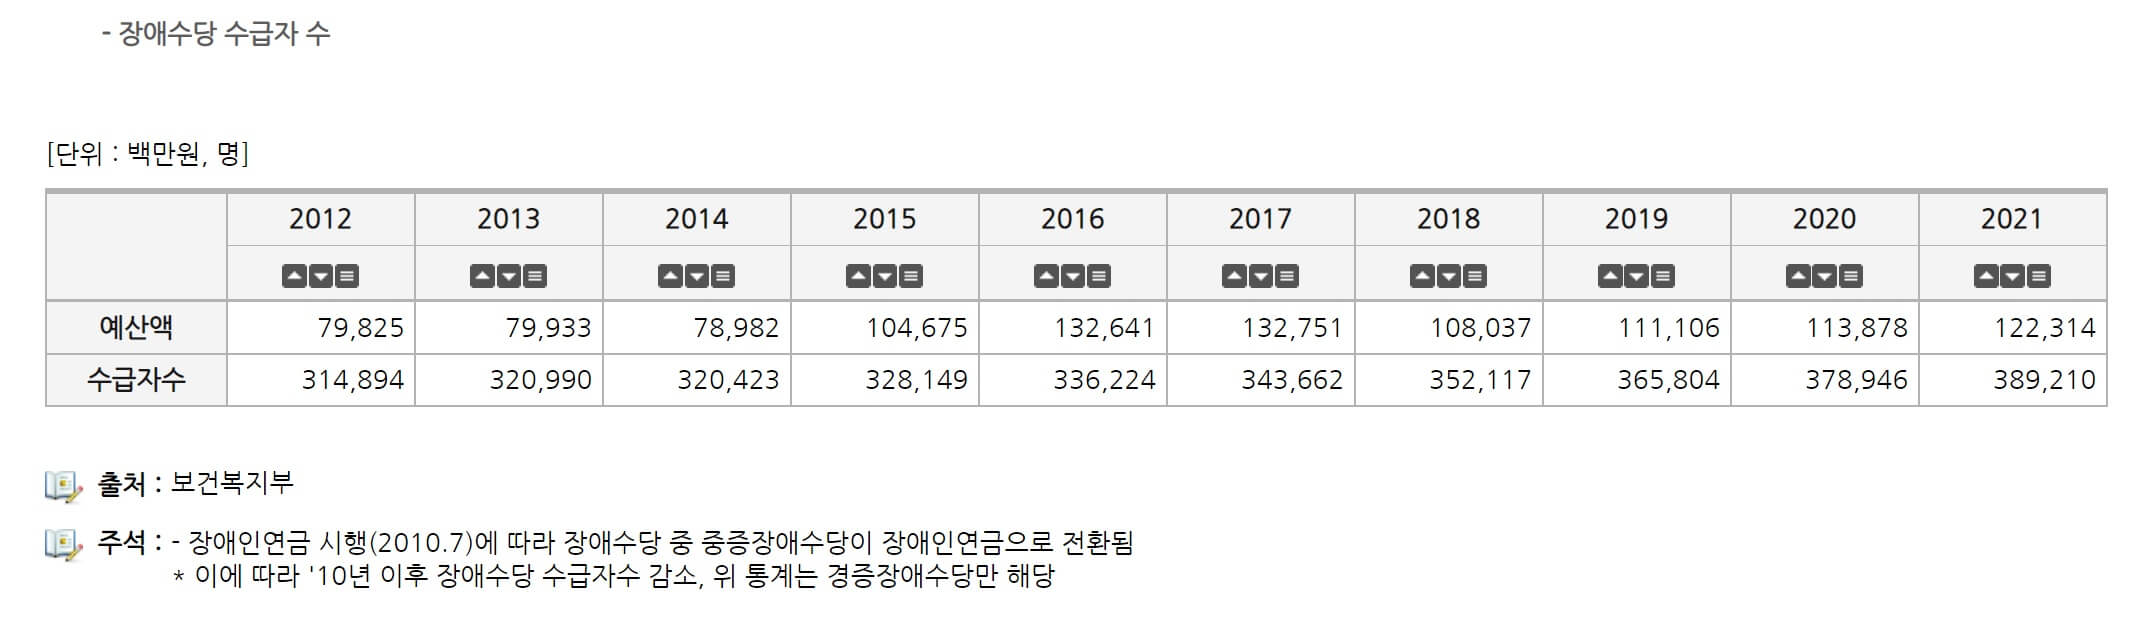 한국 장애인 수급자 지급액 표